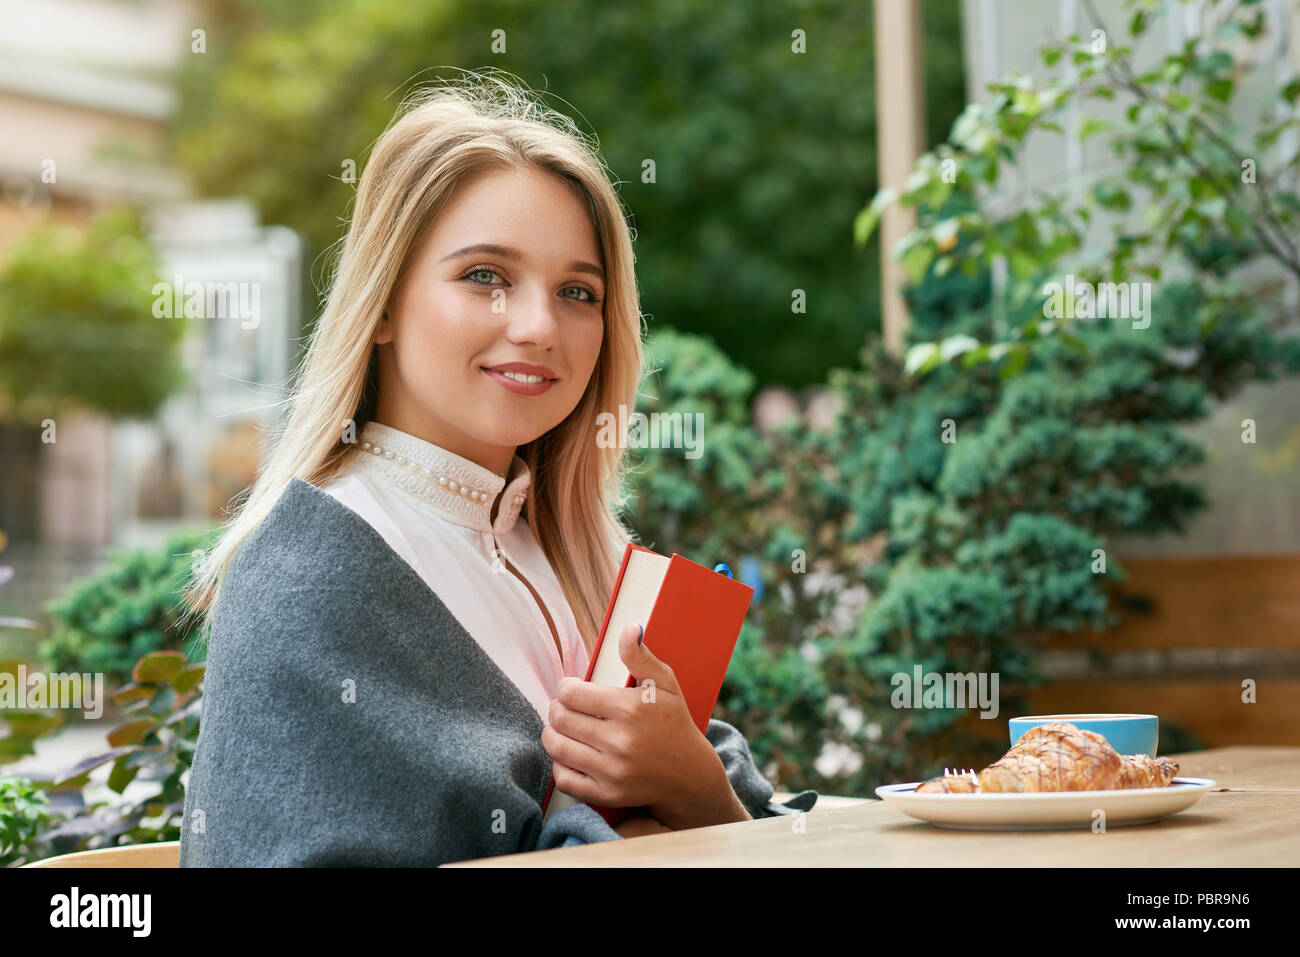 Cute girl Holding Big Red Book Cafe im Freien sitzen, essen leckere Croissants. In kurze blonde Haare, große blaue Augen, blassen Wangen, dicke Lippen. Grüne Pflanzen und Sommer Straße für den Hintergrund. Stockfoto